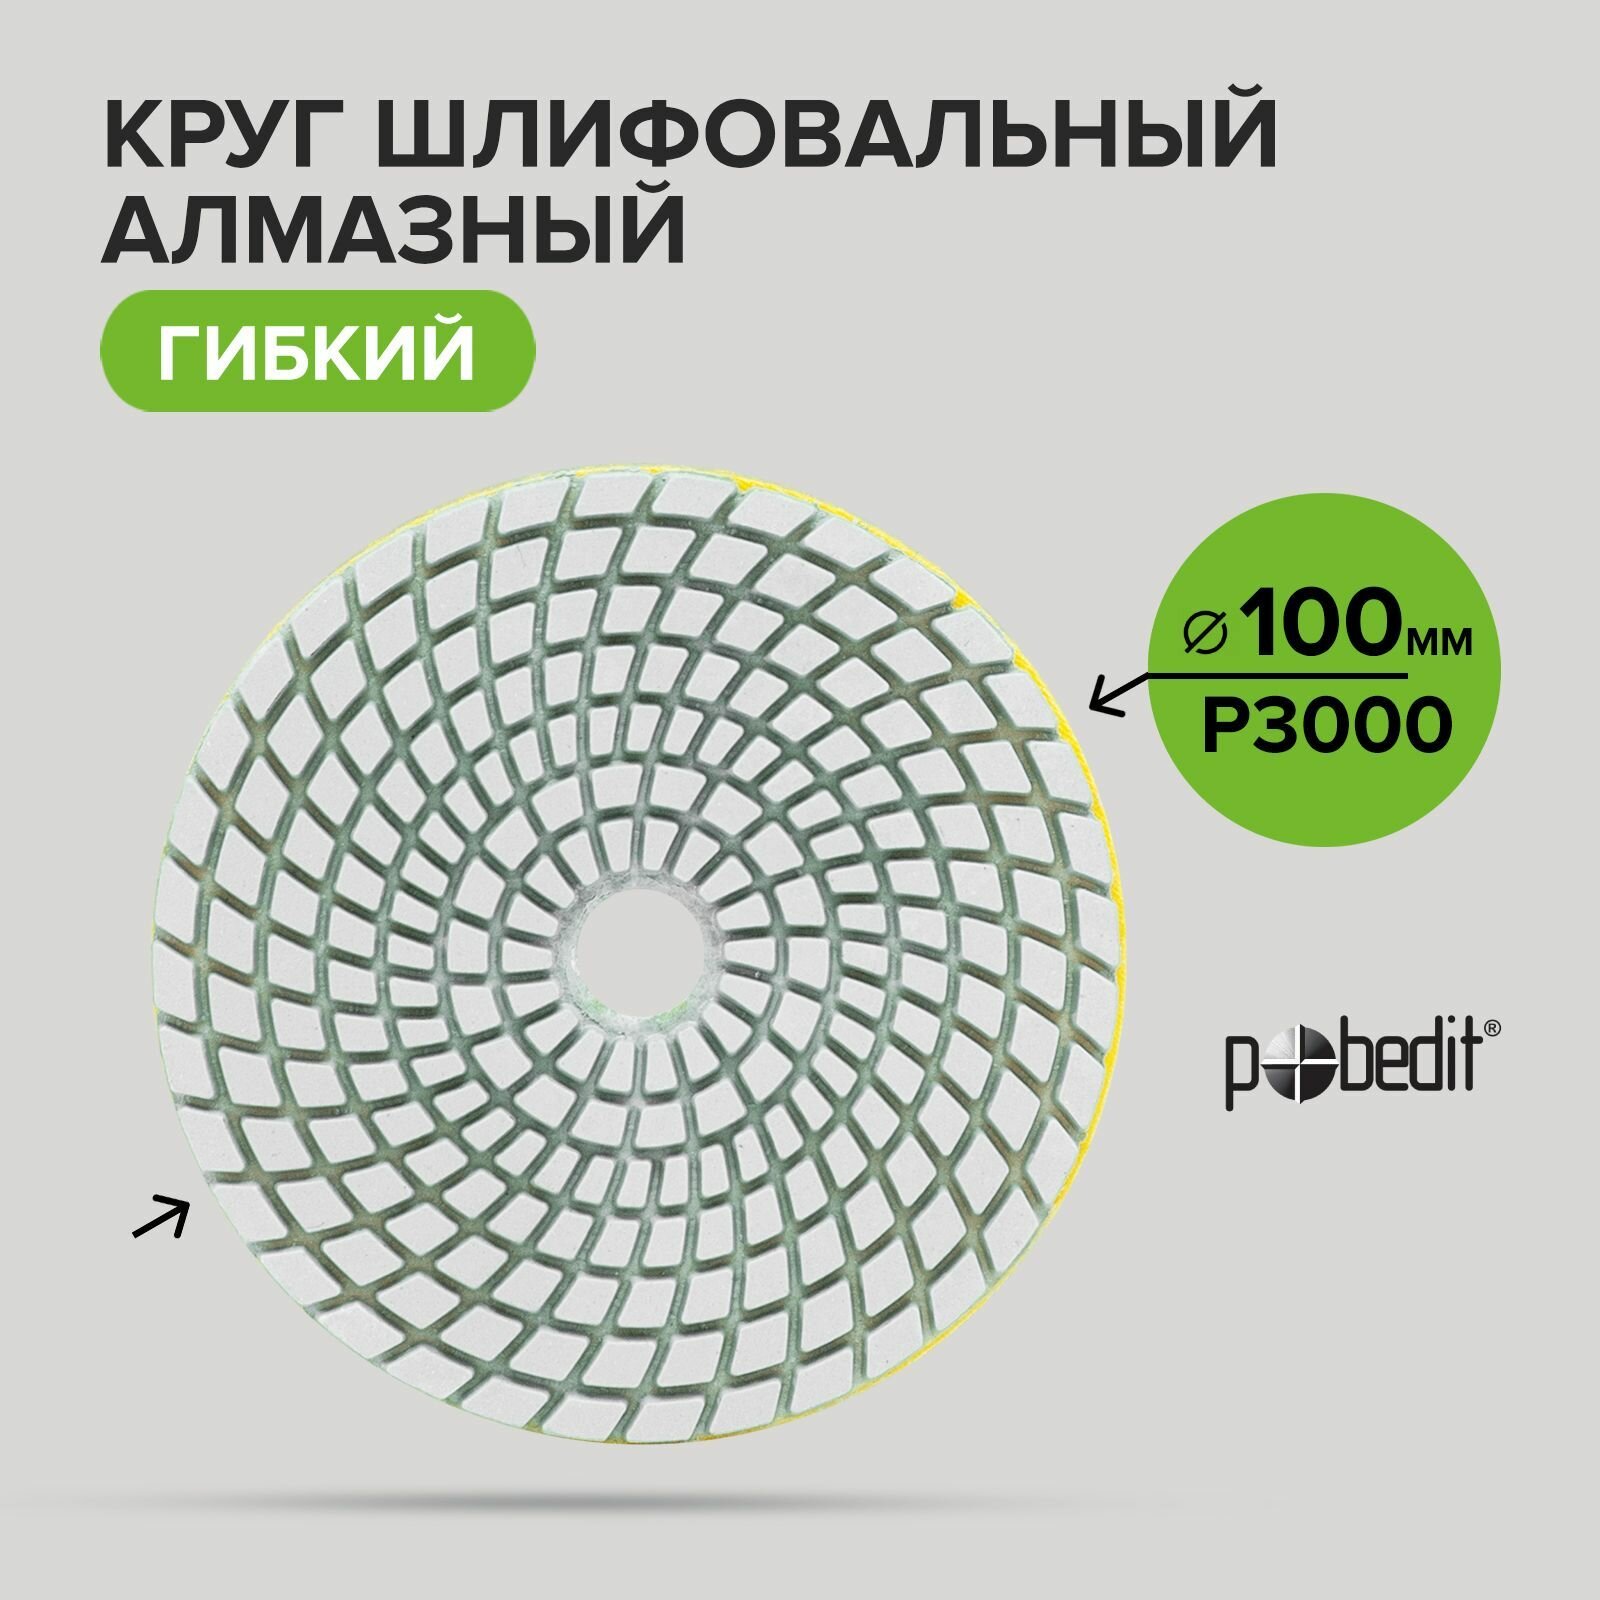 Алмазный гибкий шлифовальный круг черепашка мокрое шлифование Pobedit 100 мм Р3000